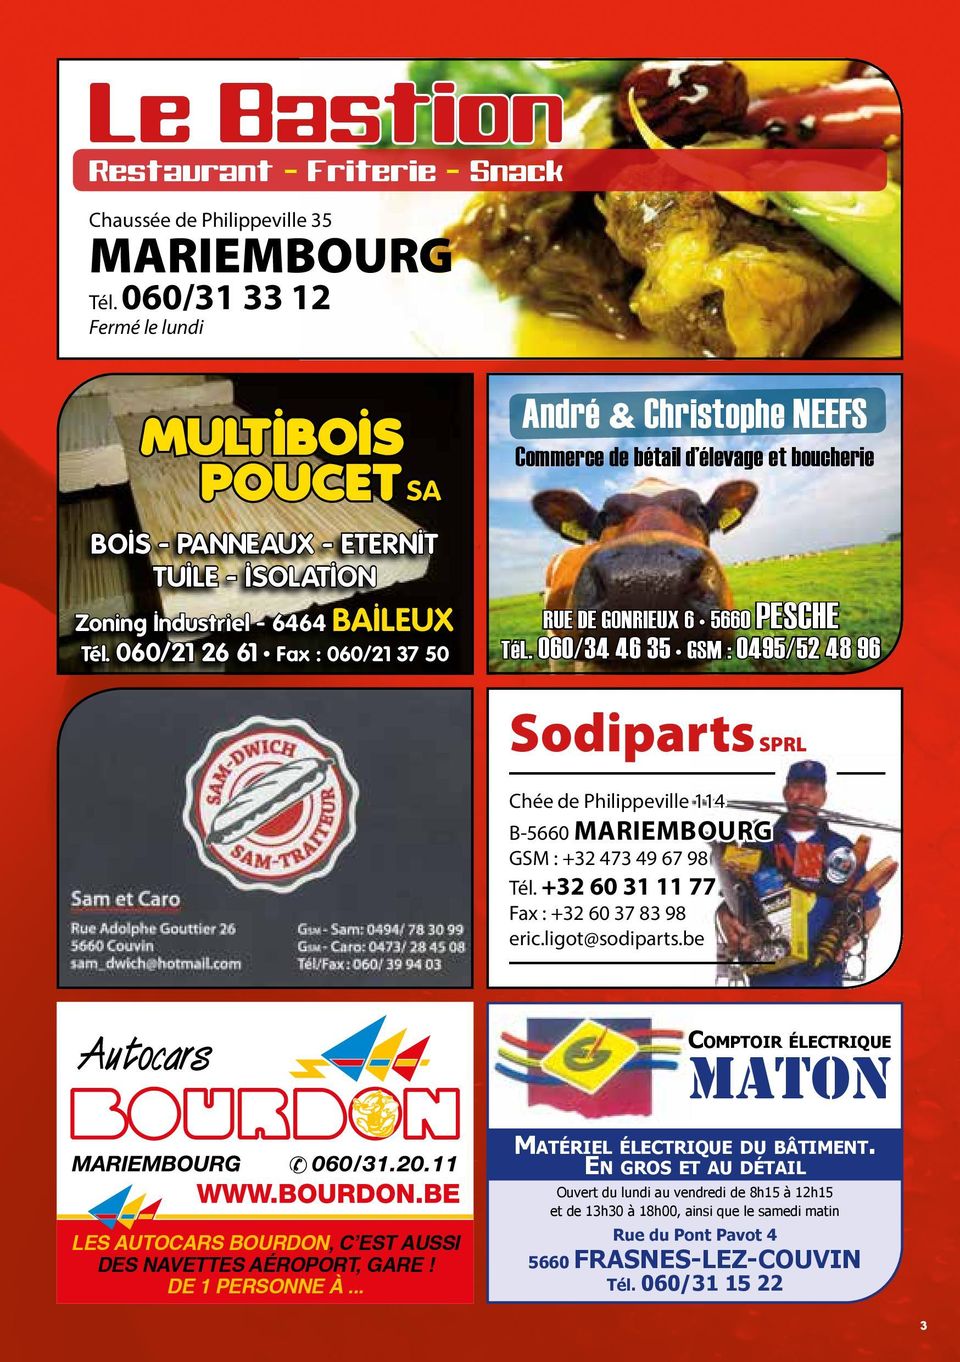 060/21 26 61 Fax : 060/21 37 50 André & Christophe NEEFS Commerce de bétail d élevage et boucherie RUE DE GONRIEUX 6 5660 PESCHE TéL.